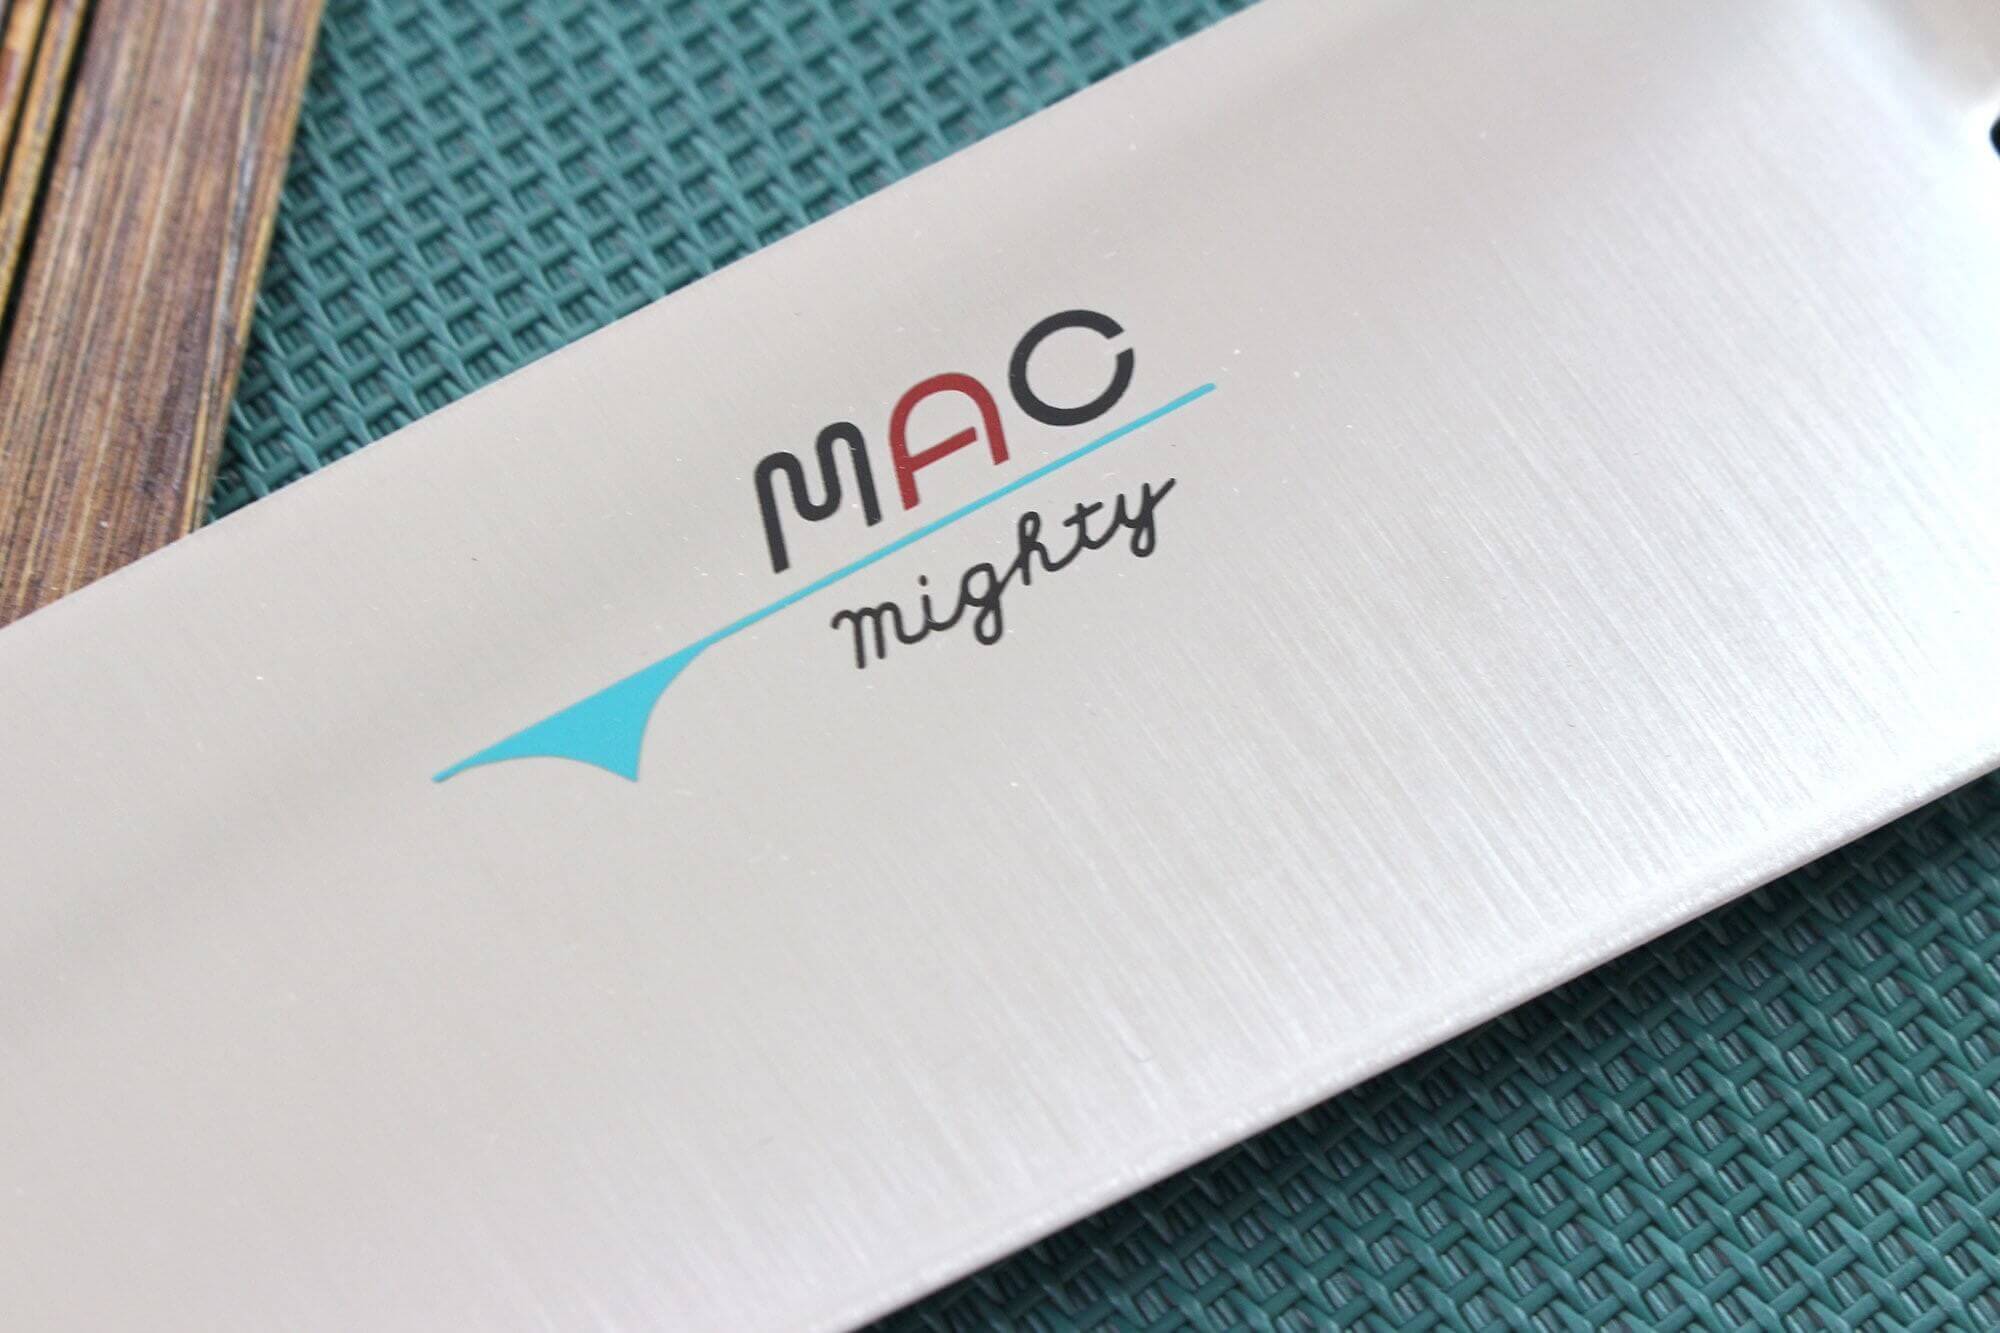 MAC Professional couteau de chef japonais 22cm